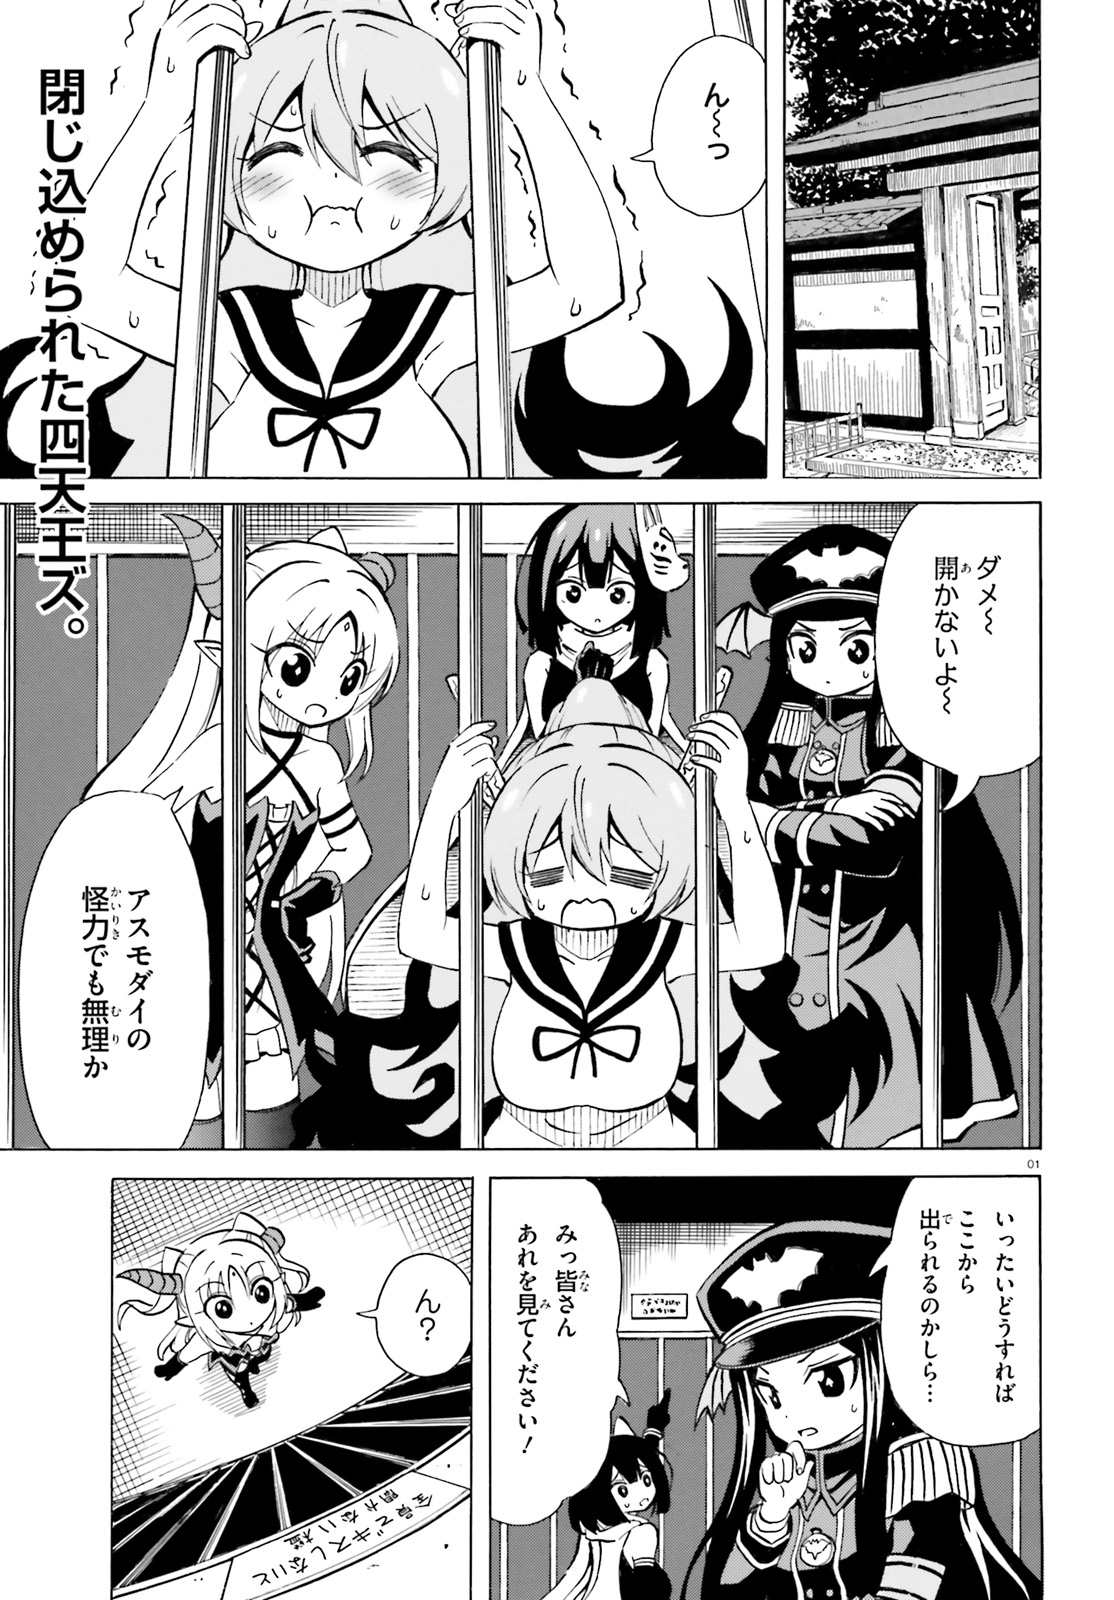 Beriaru-sama wa Shitenno no Naka Demo × × - Chapter 10 - Page 1